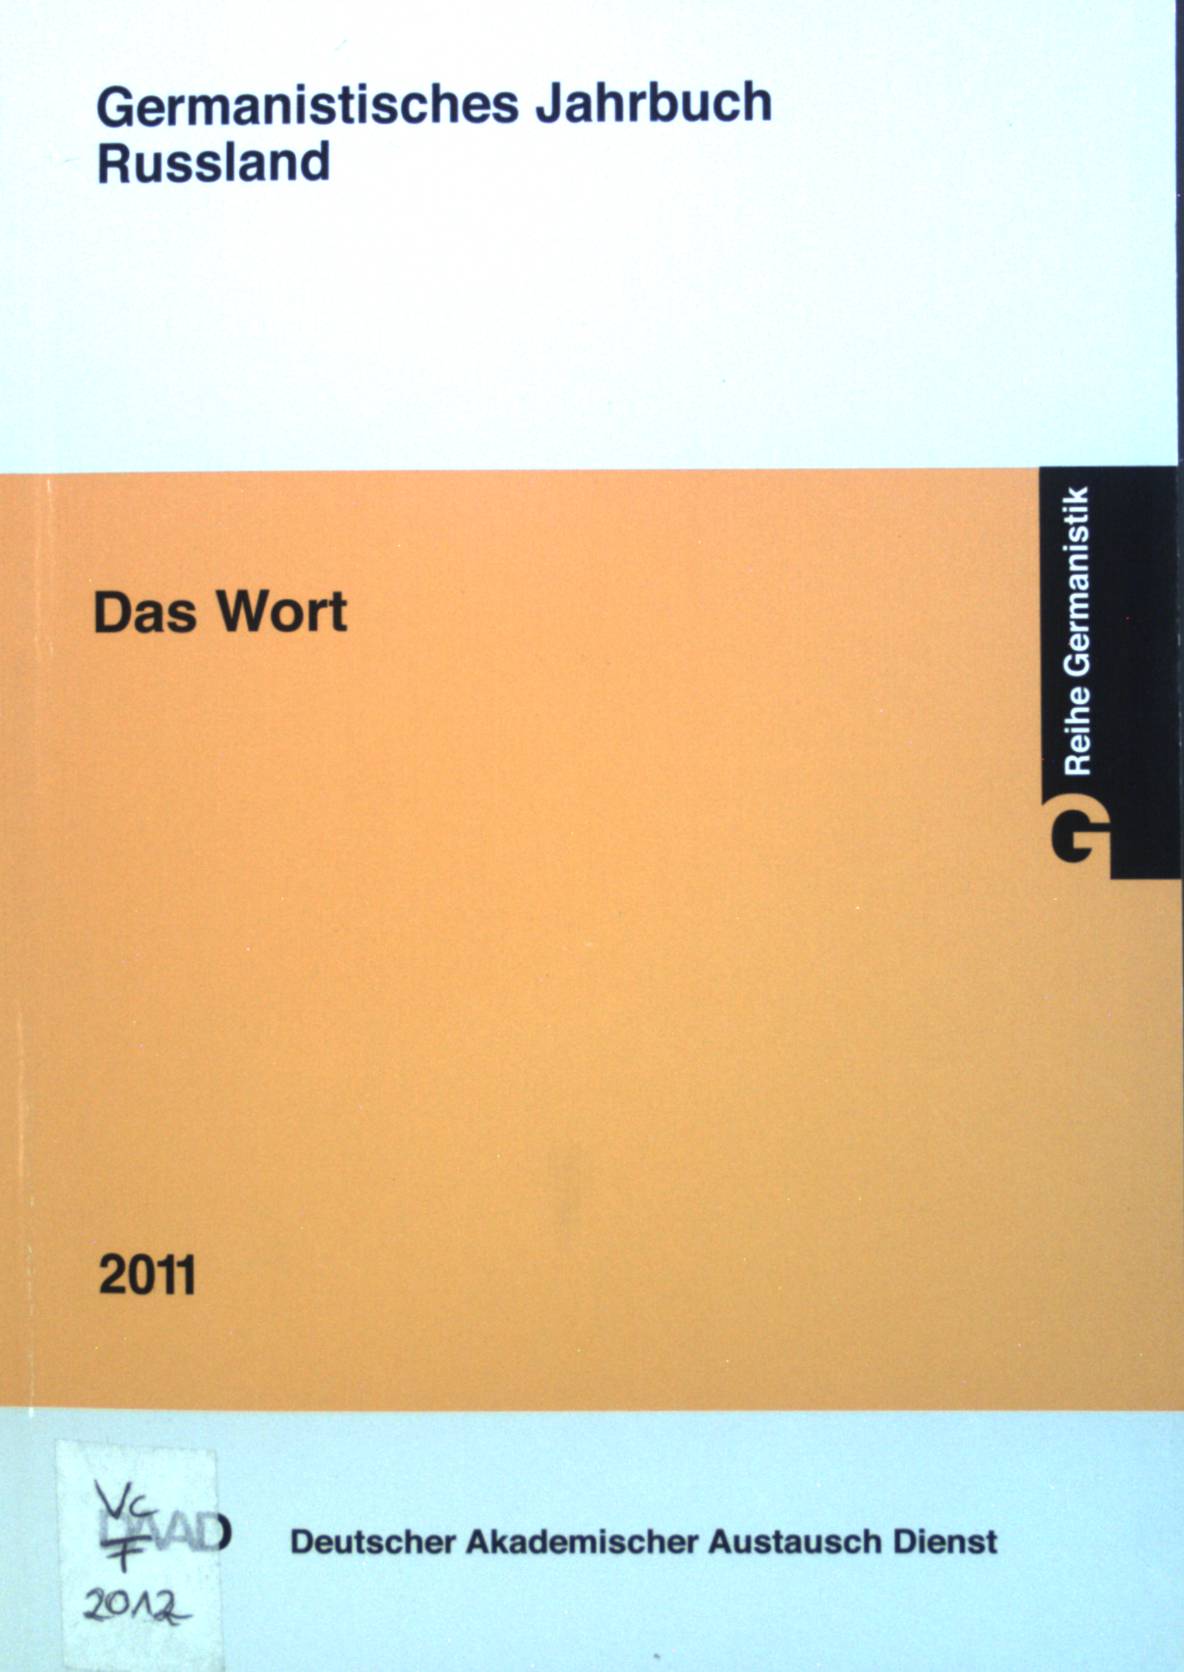 Germanistisches Jahrbuch Russland 2011 - Das Wort - Schütz, Stephan